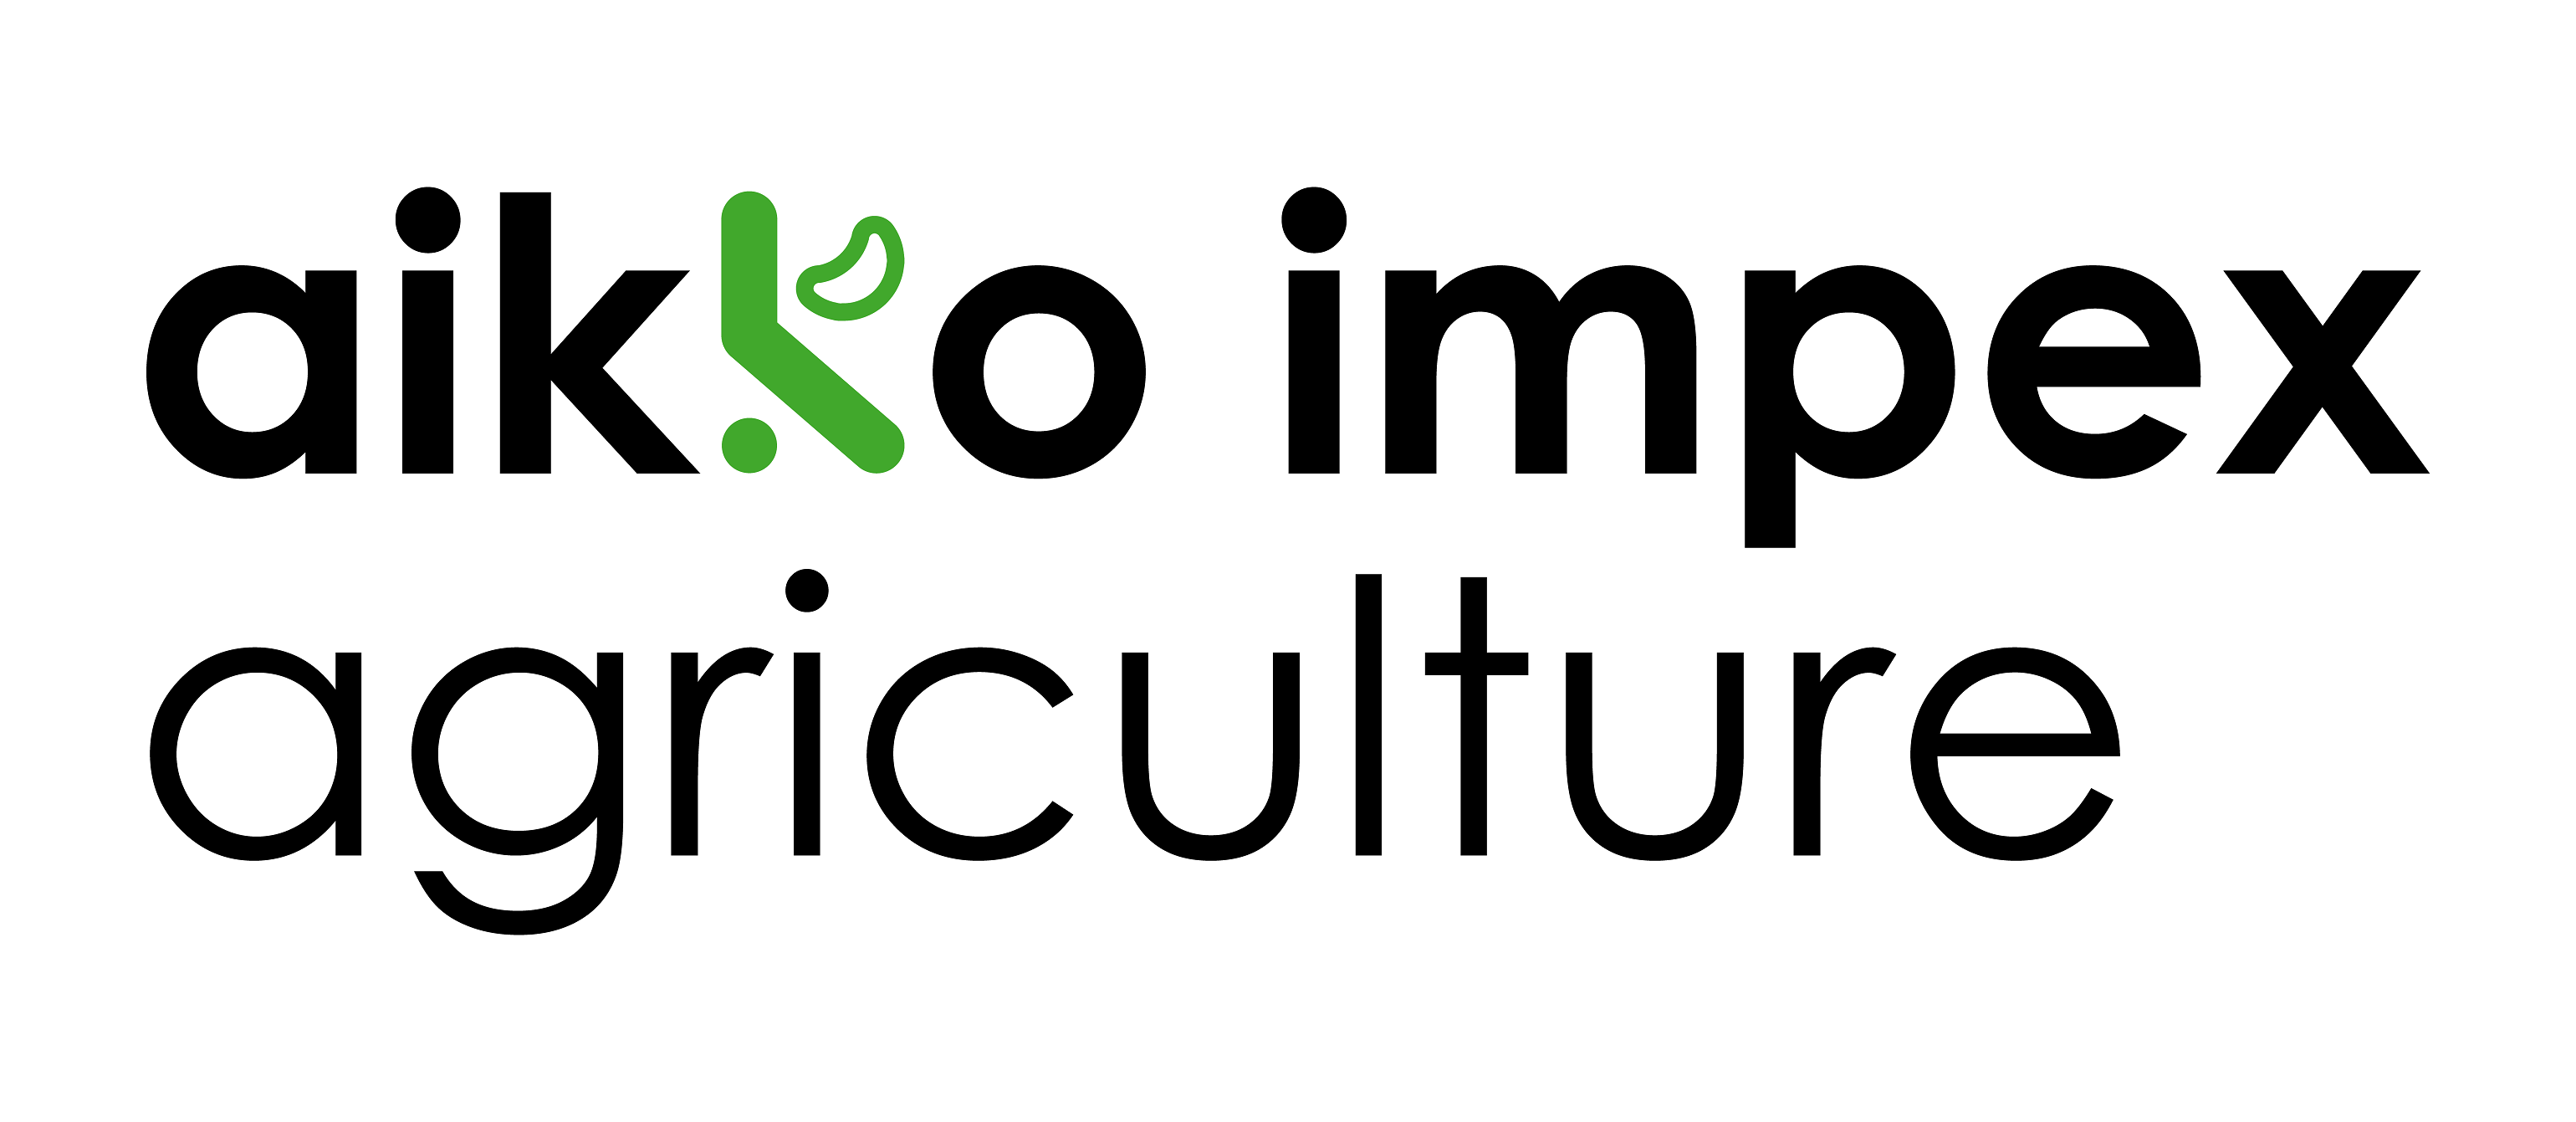 AIKKO IMPEX AGRICULTURE